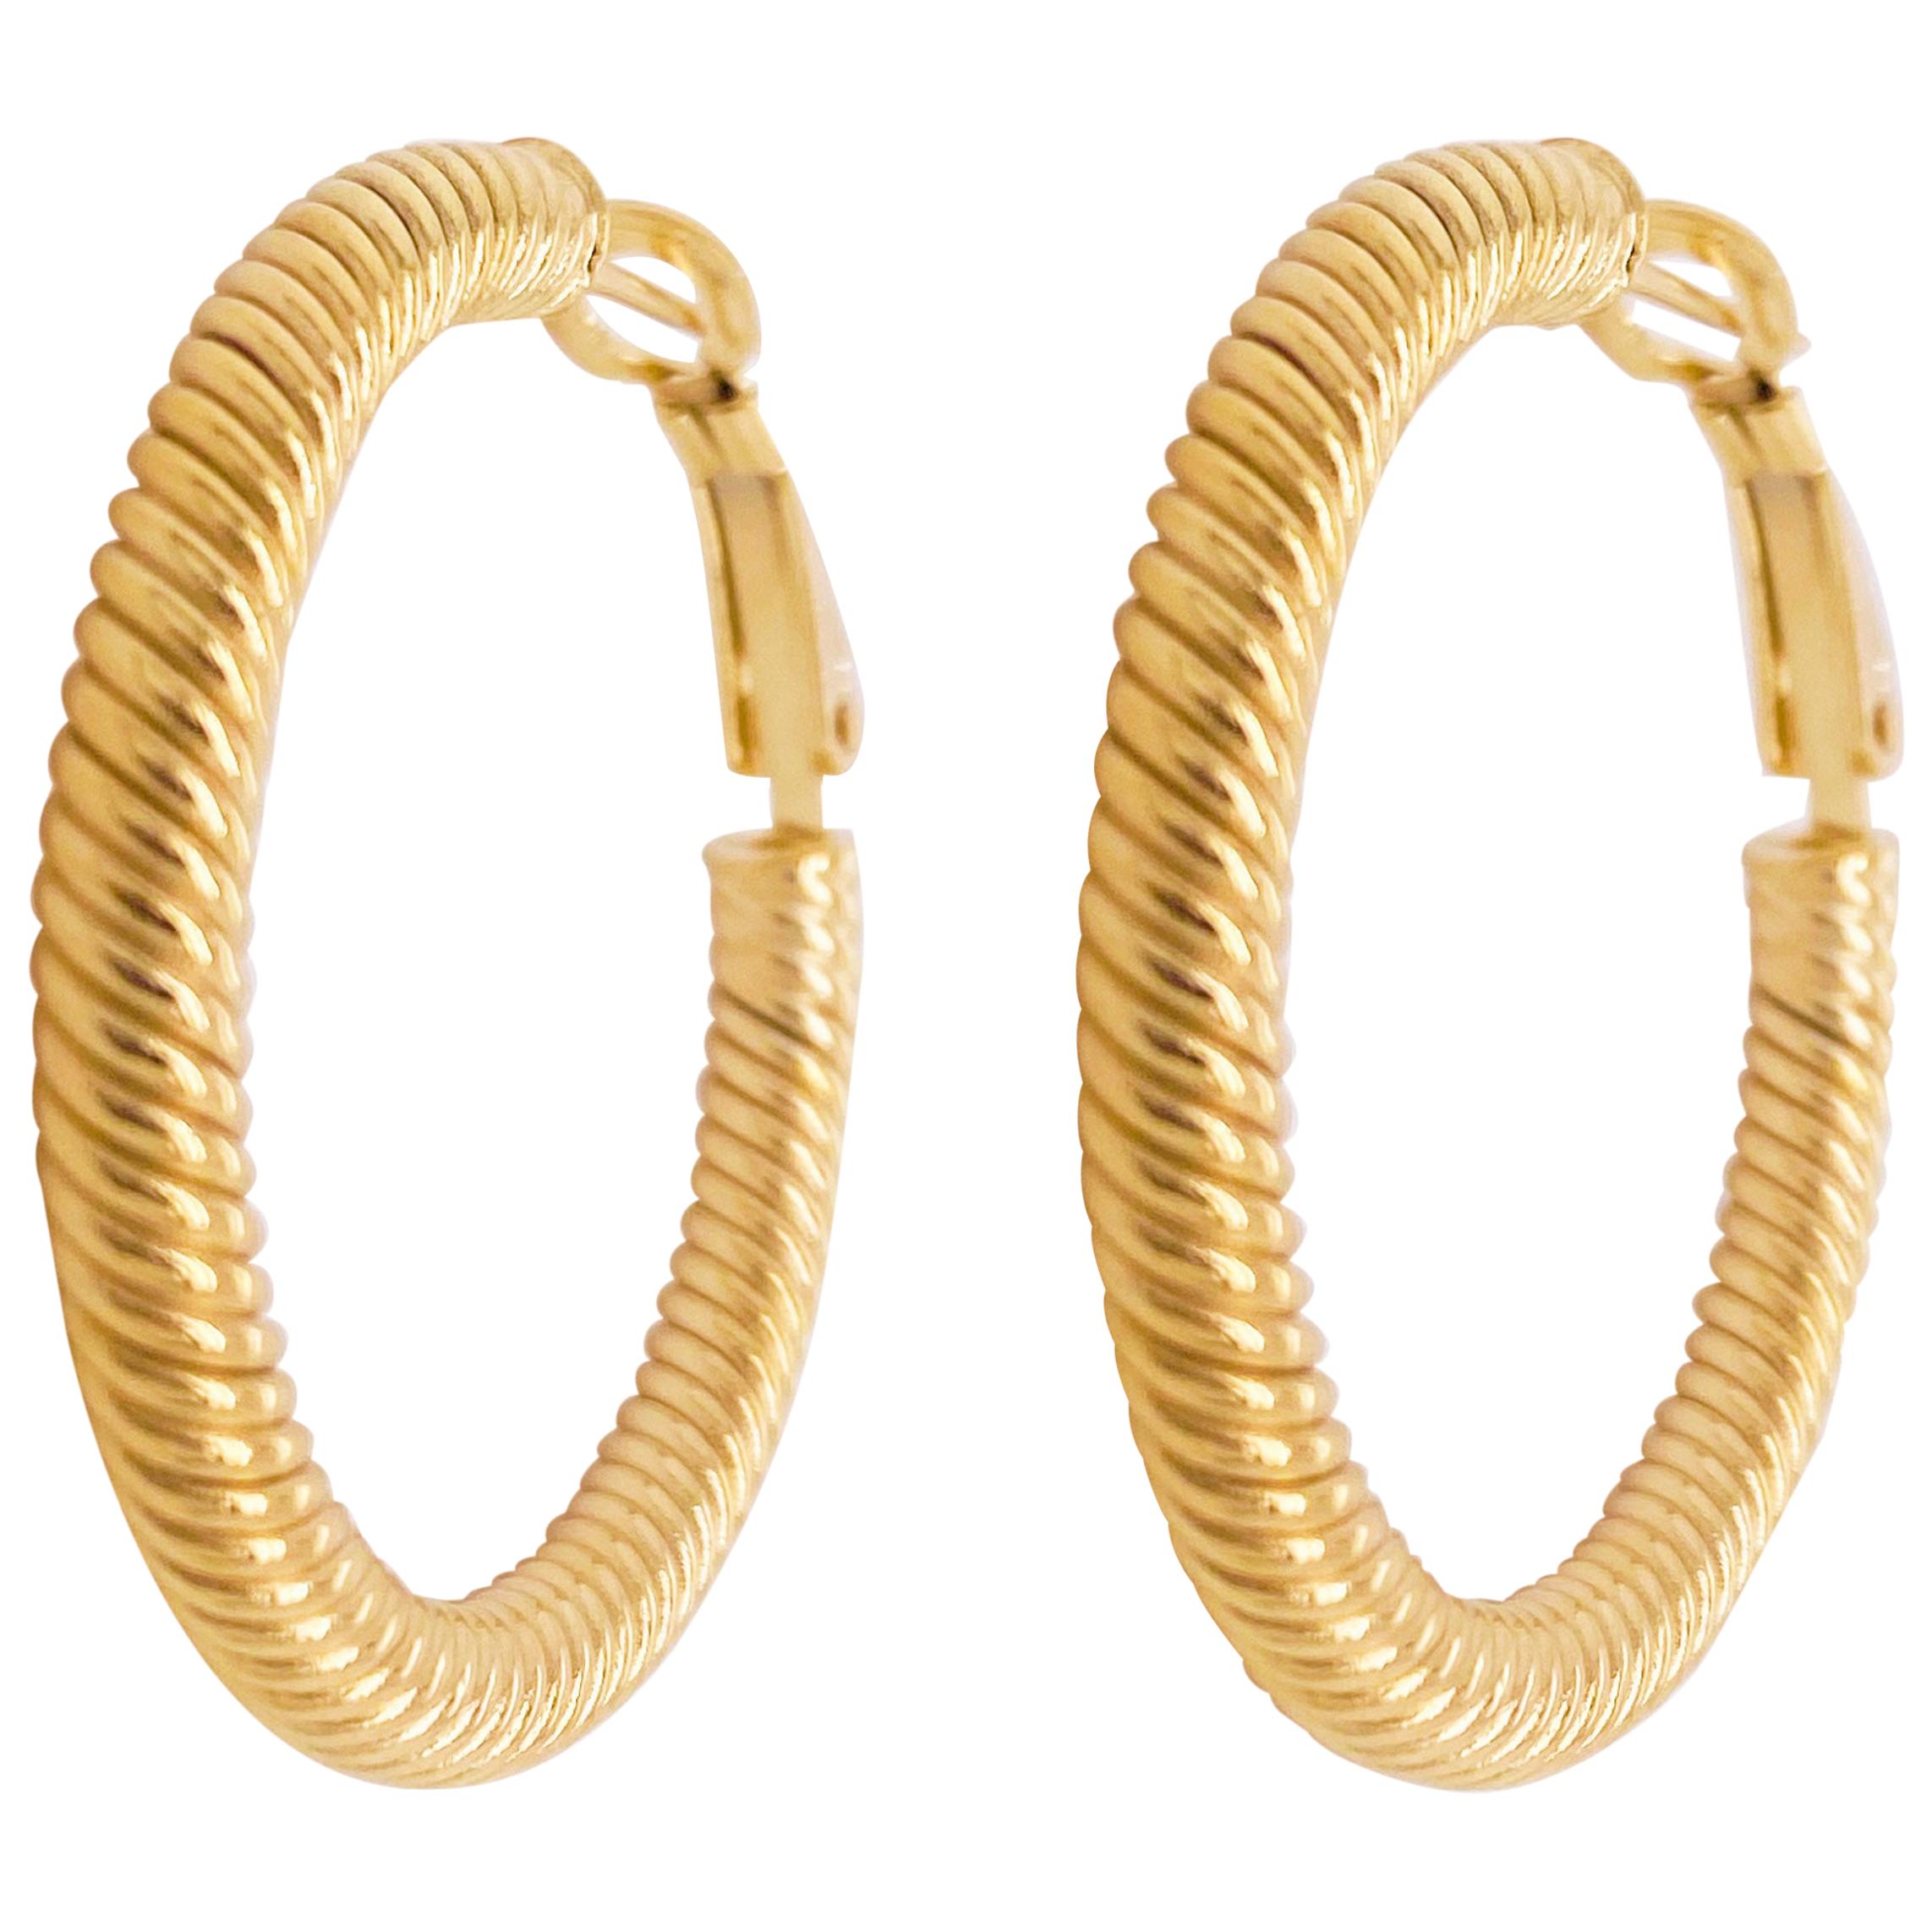 Gold Hoop Earrings, 14 Karat Twisted Hoops, 14 Karat Yellow Gold, Medium Hoops